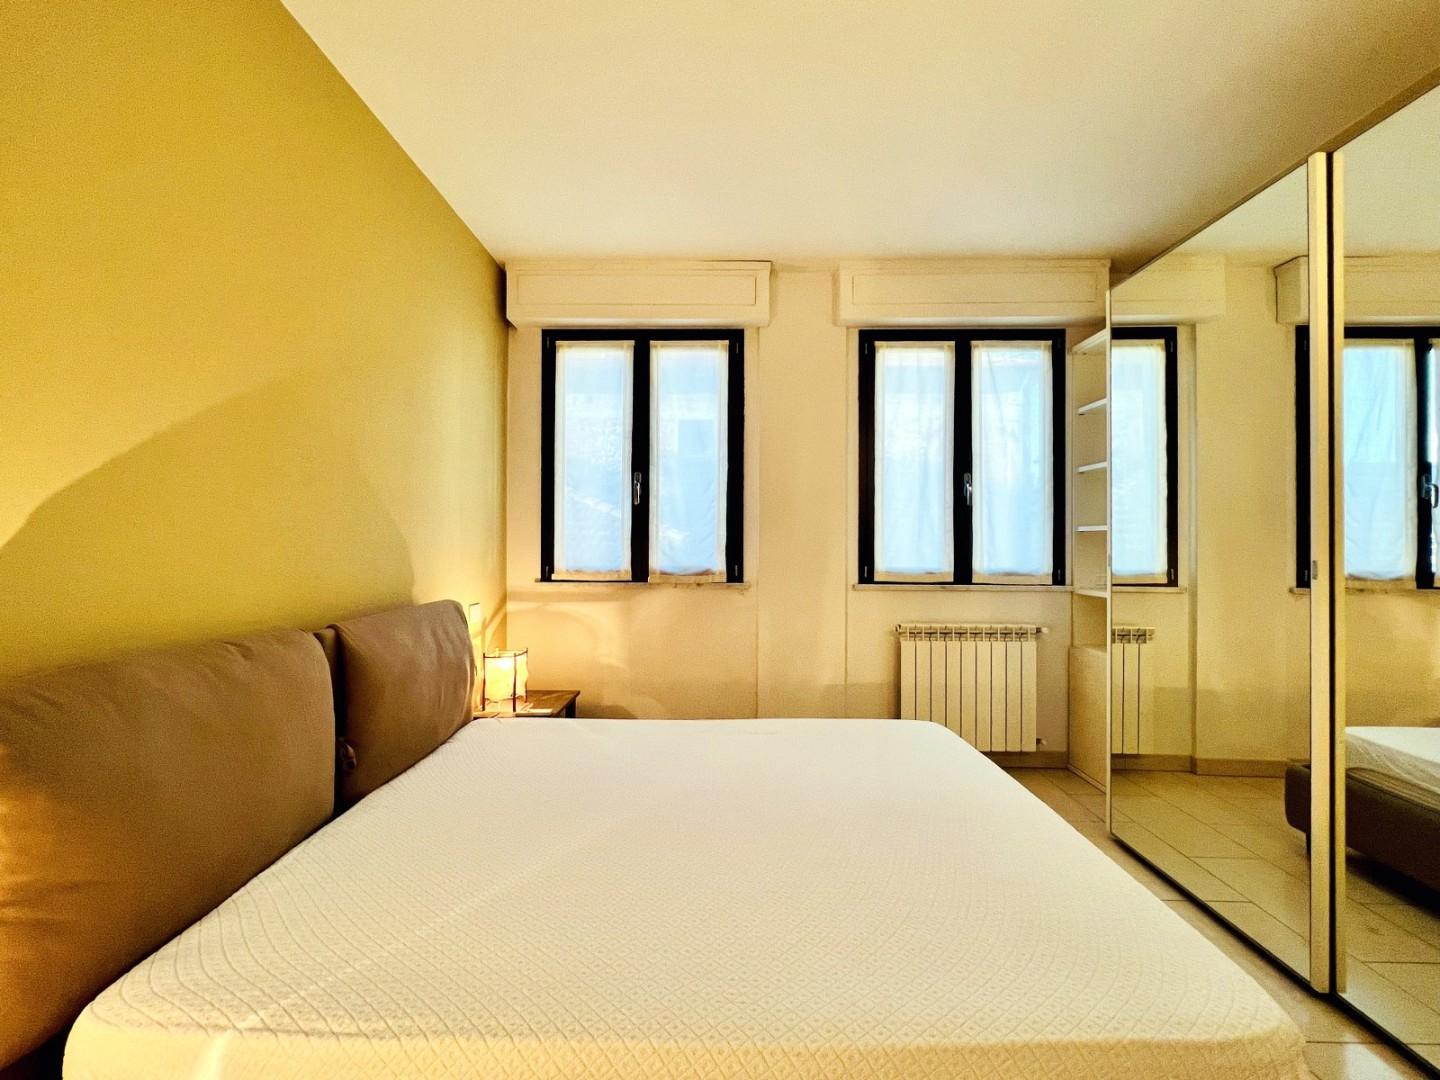 Appartamento in affitto - Fiumetto, Pietrasanta